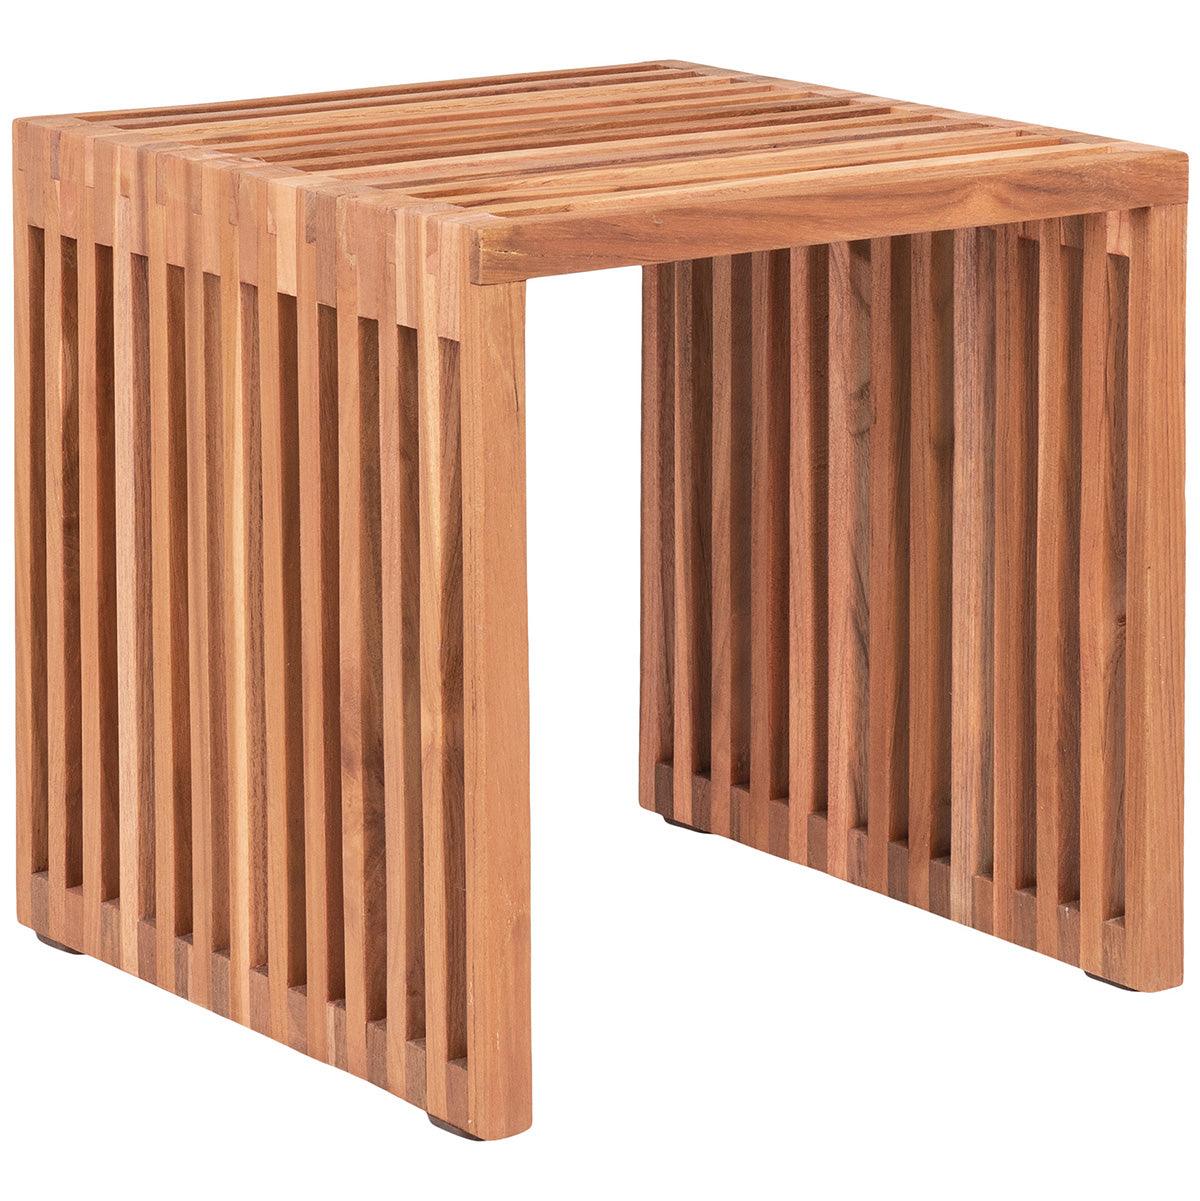 Pego Natural Teak Wood Side Table - WOO .Design